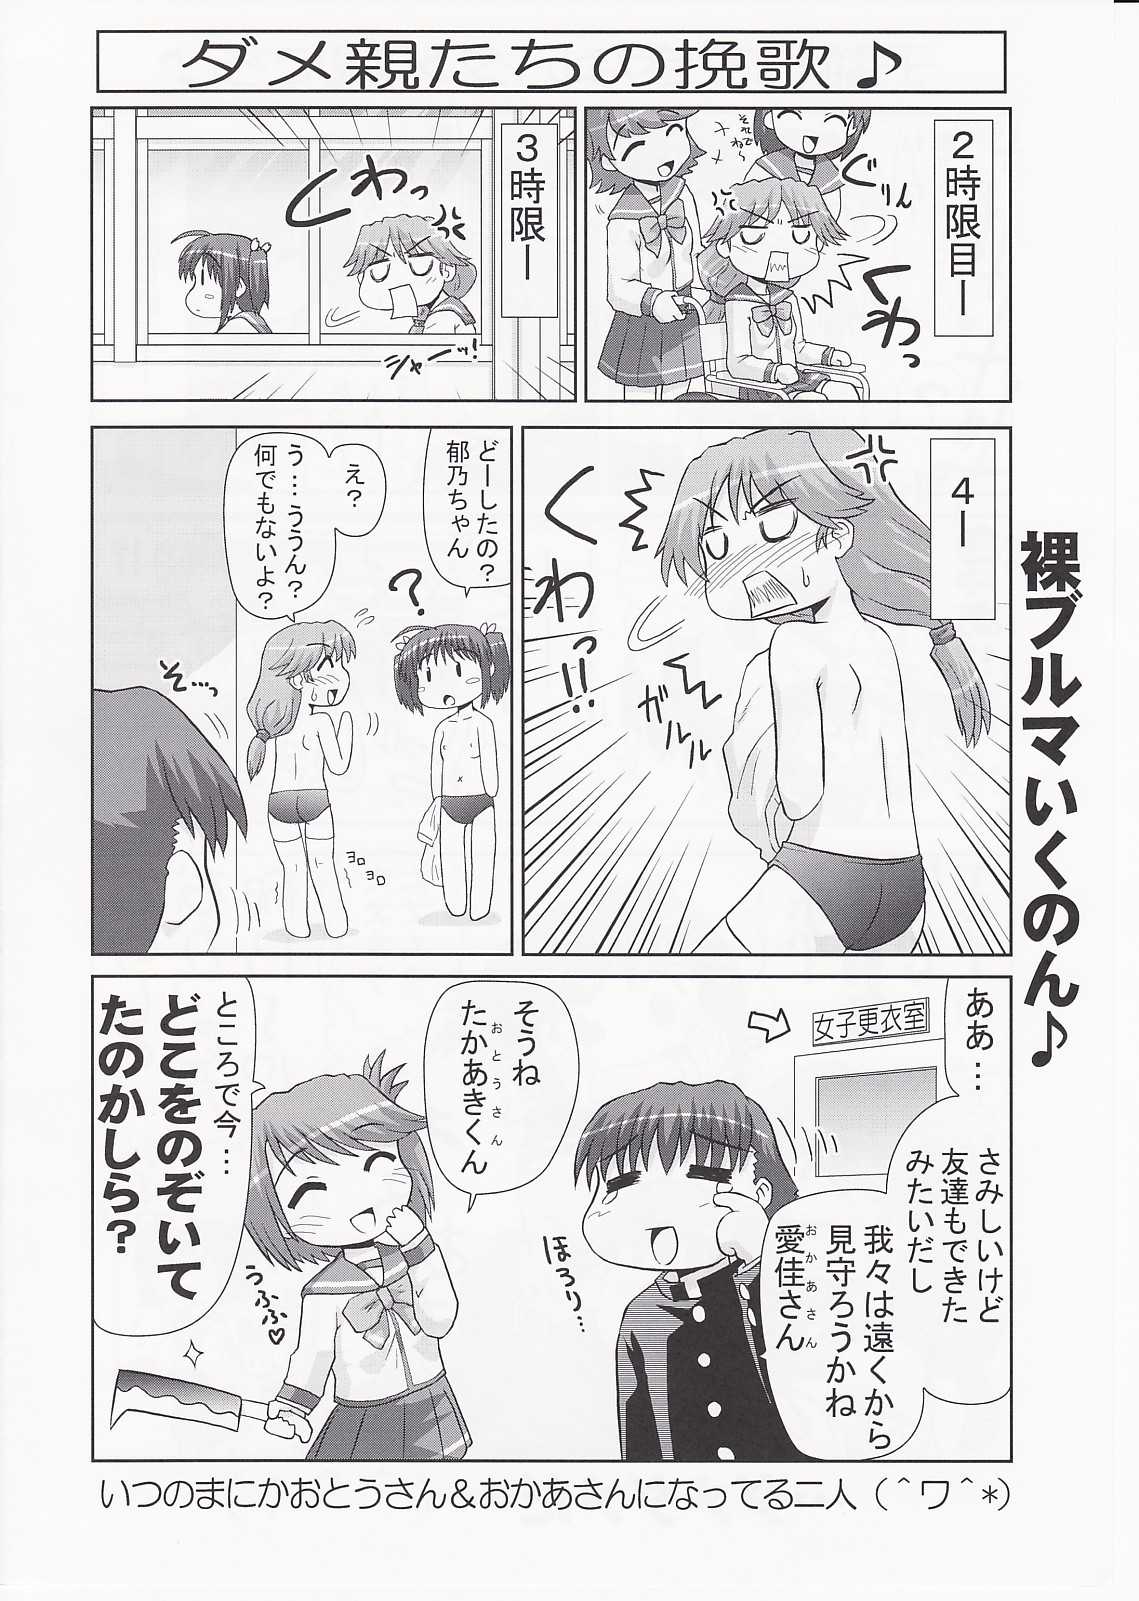 [PNO Group] Ikunon Manga 3 (ToHeart 2) 